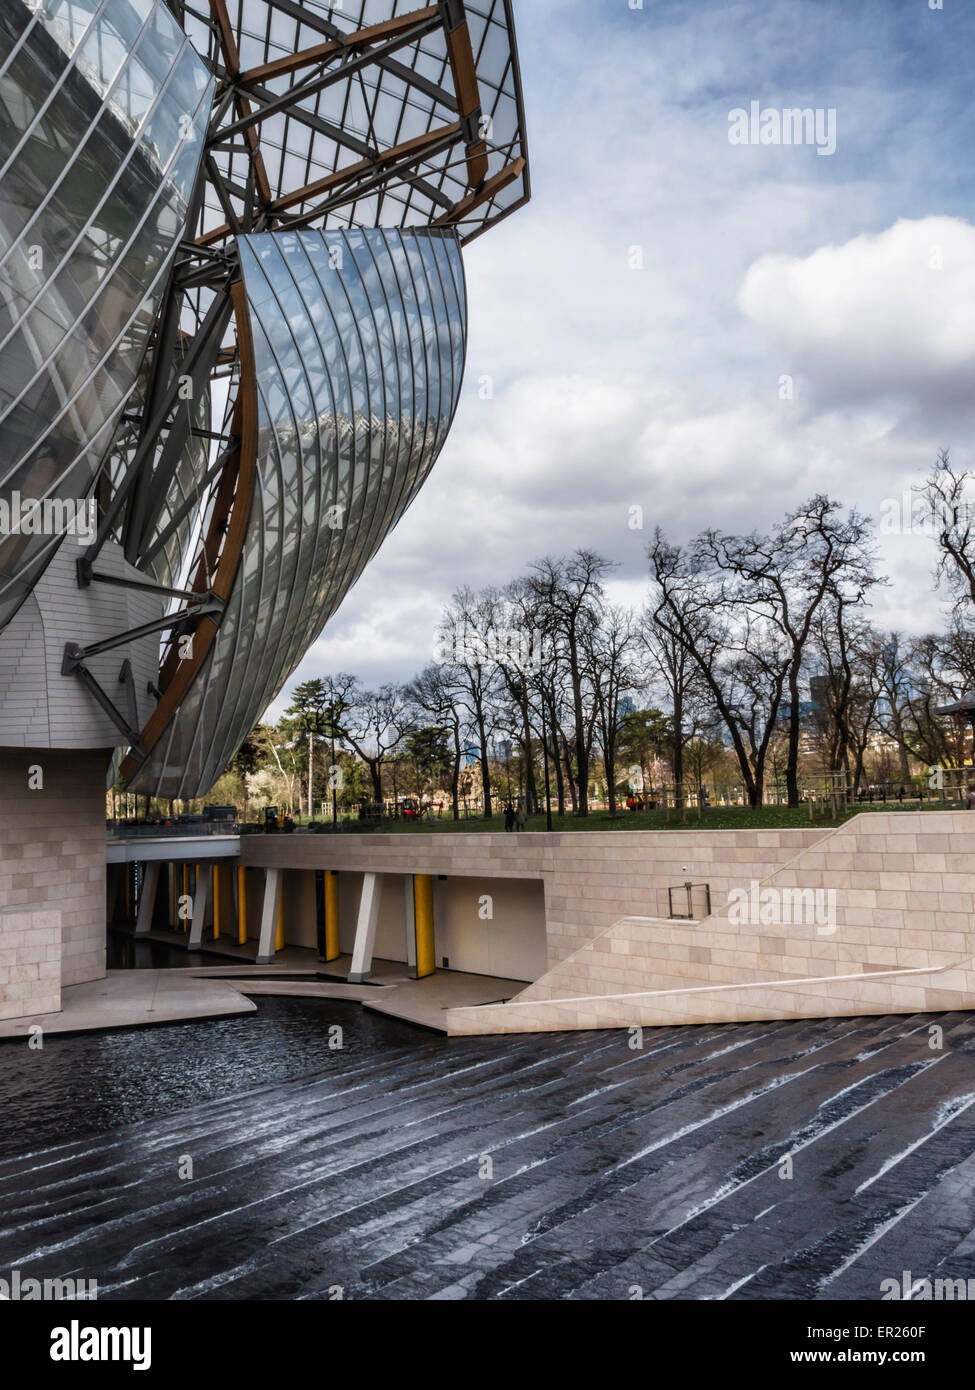 Fondazione di Parigi Louis Vuitton galleria d'arte, esterno del moderno in vetro e acciaio da costruzione architetto Frank Gehry Foto Stock